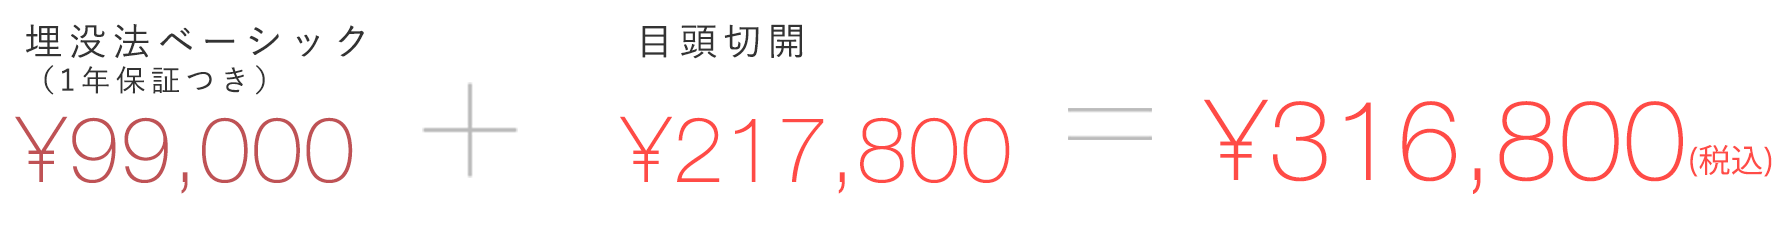 埋没法ベーシック(一年保証付き)¥90,700 + 目頭切開¥191,520 = ¥282,220